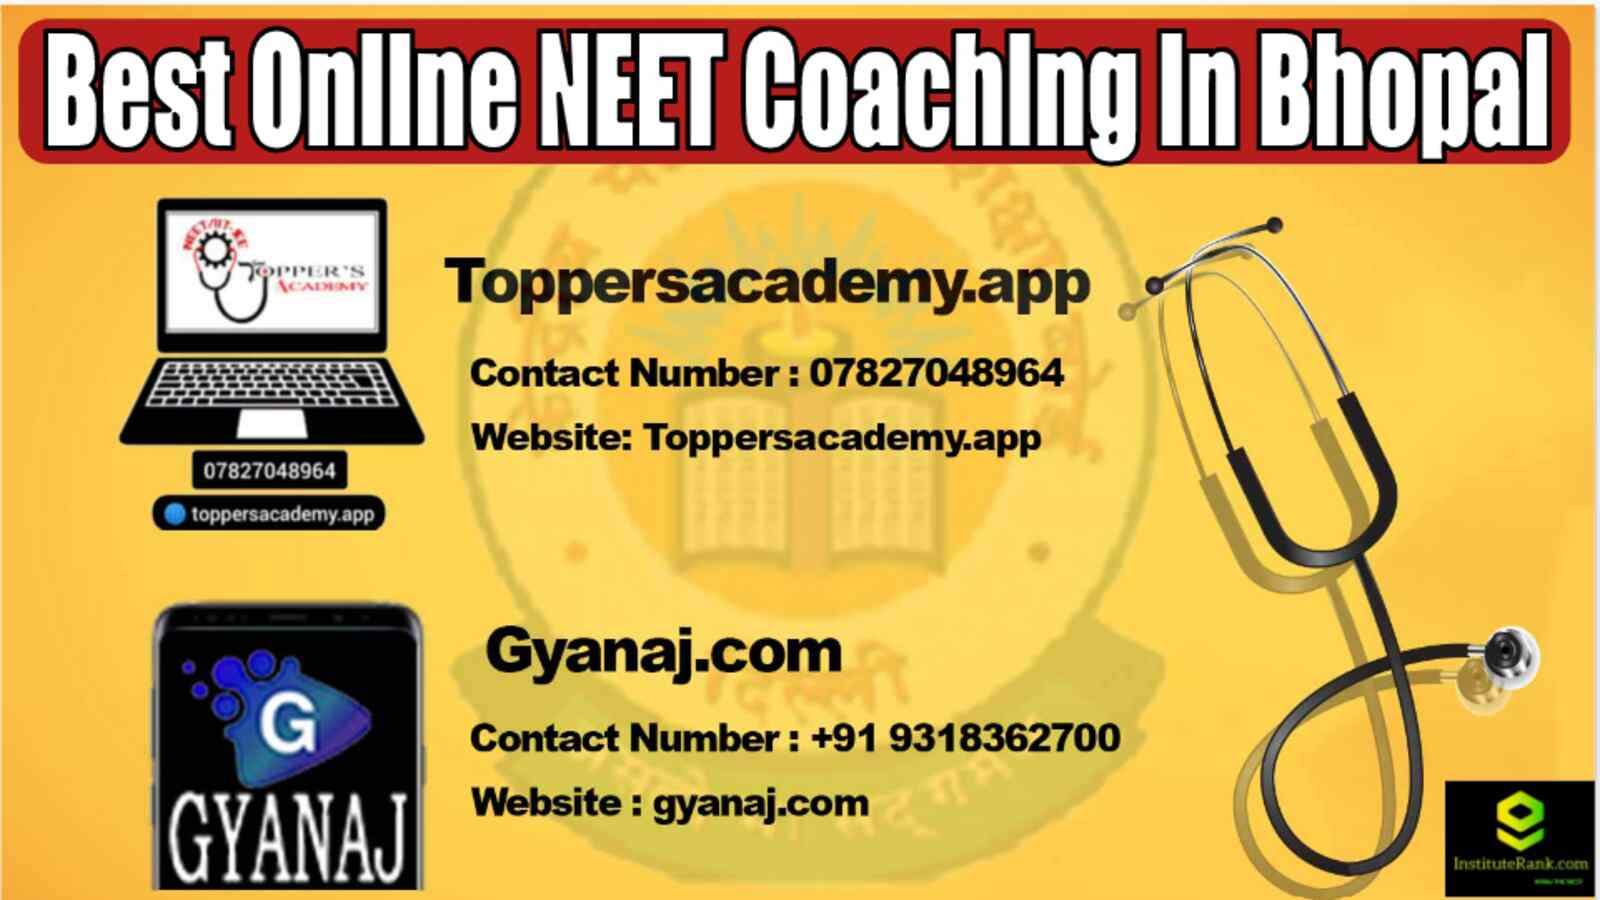 Best Online NEET Coaching in Bhopal 2022